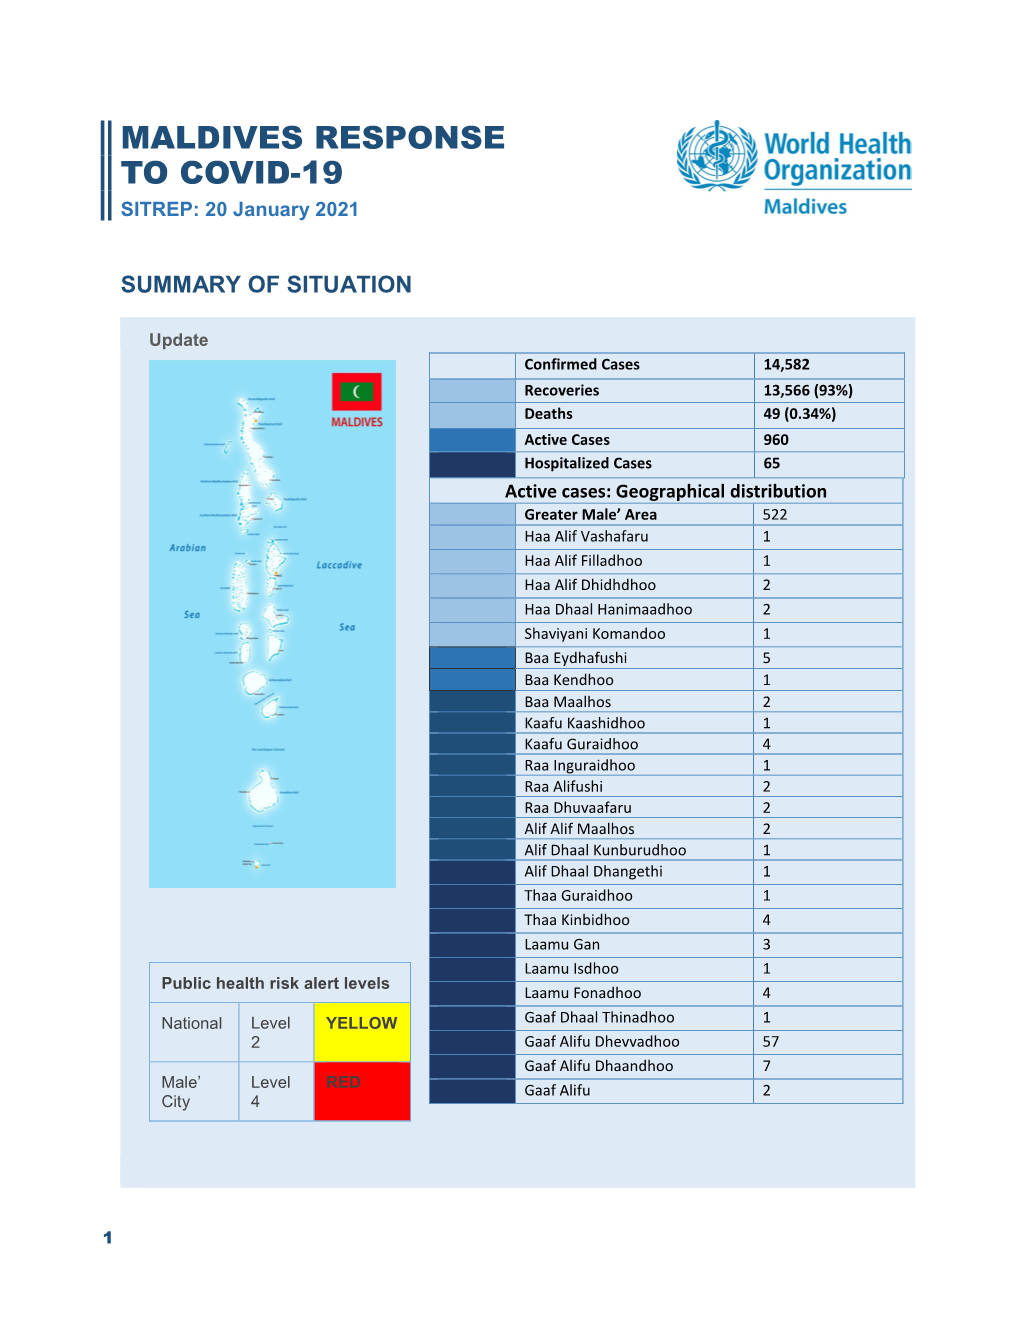 MALDIVES RESPONSE to COVID-19 SITREP: 20 January 2021